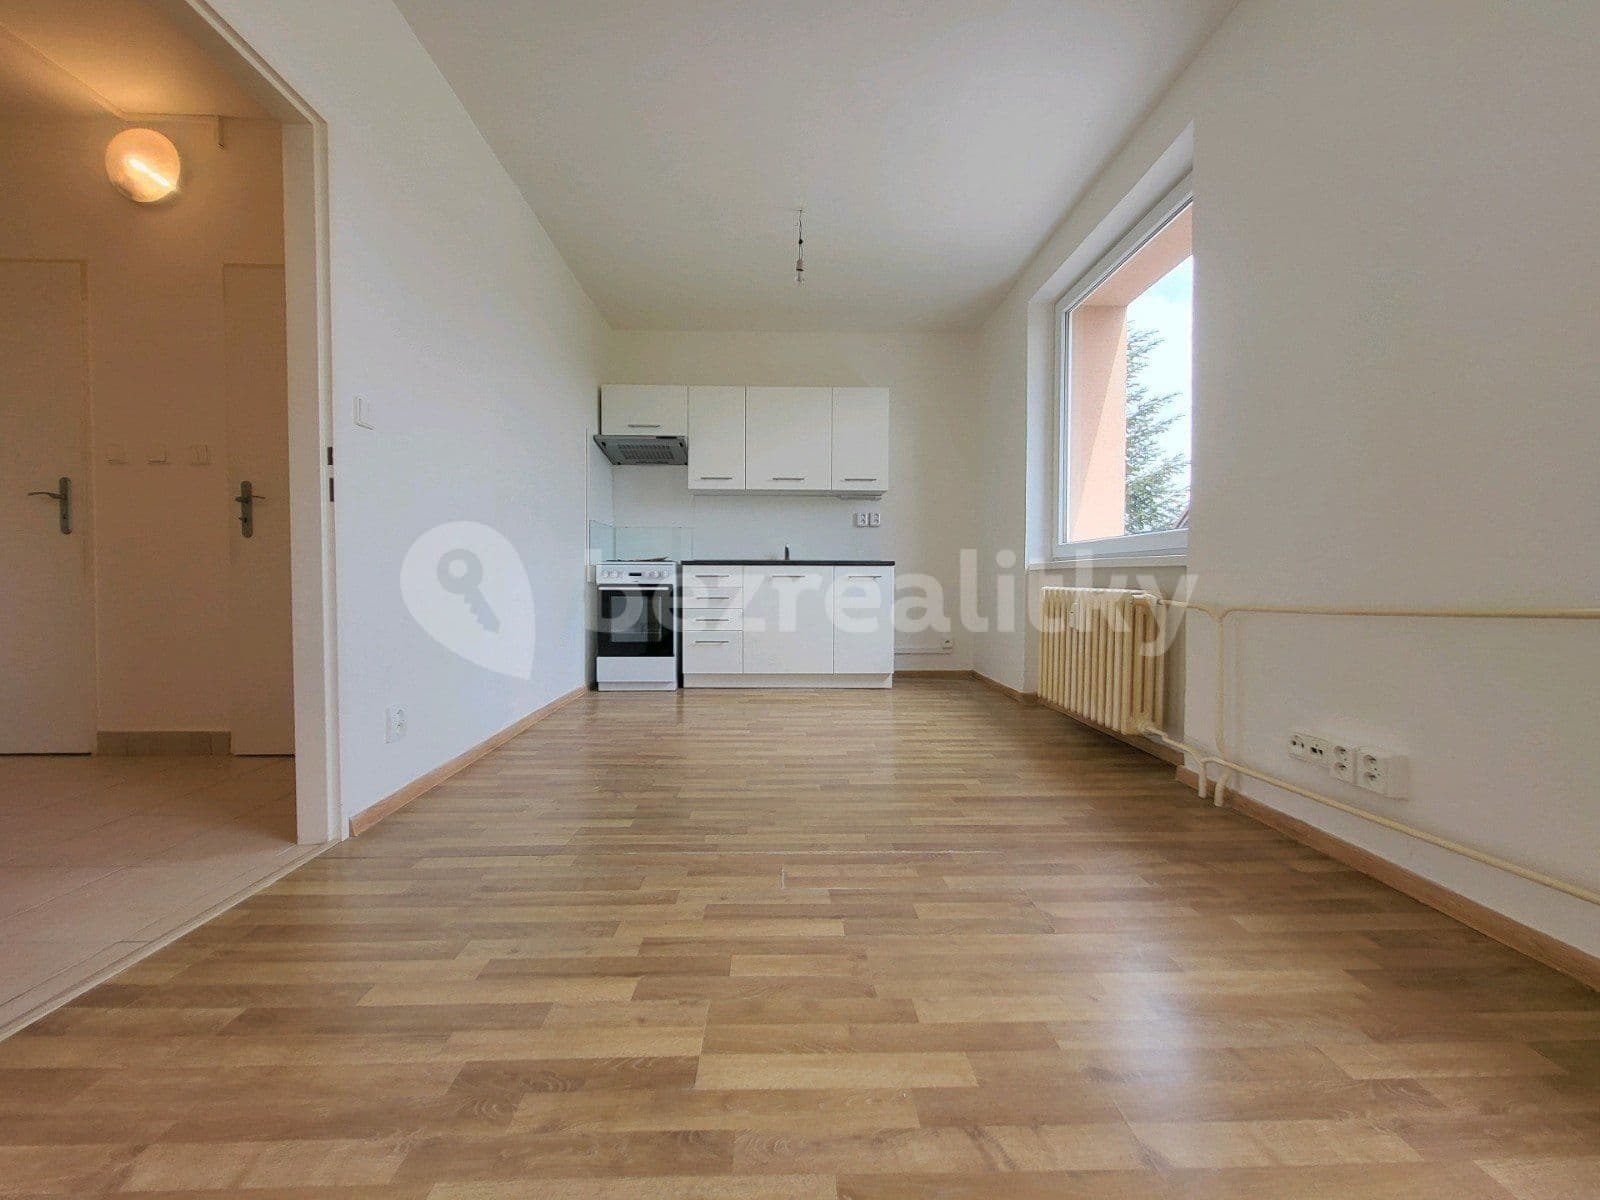 1 bedroom with open-plan kitchen flat to rent, 38 m², Dr. Glazera, Horní Suchá, Moravskoslezský Region